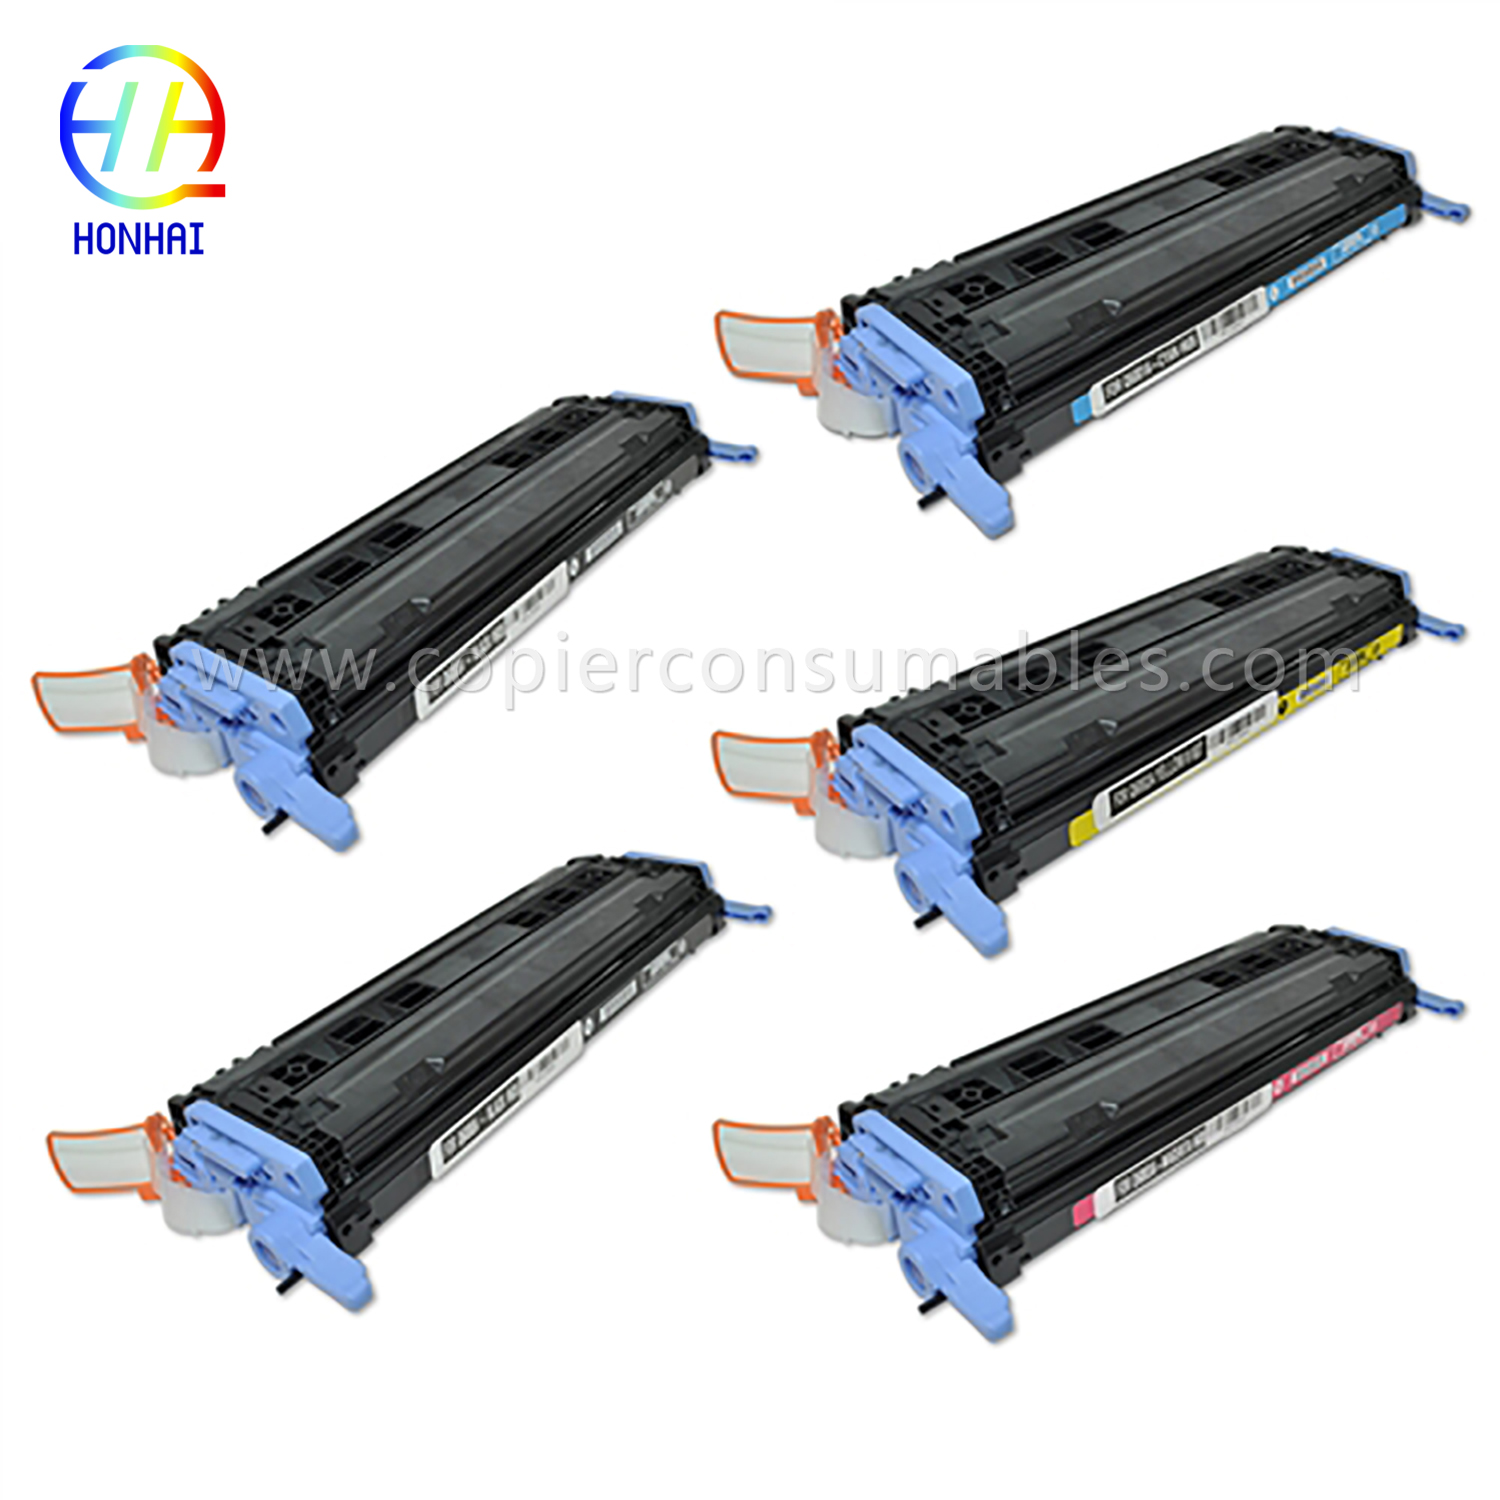 Cartuccia toner per HP Laserjet 1600 2600 2605 Cm1015mfp Cm1017mfp (Q6000A Q6001A Q6002A Q6003A) (2) Altro